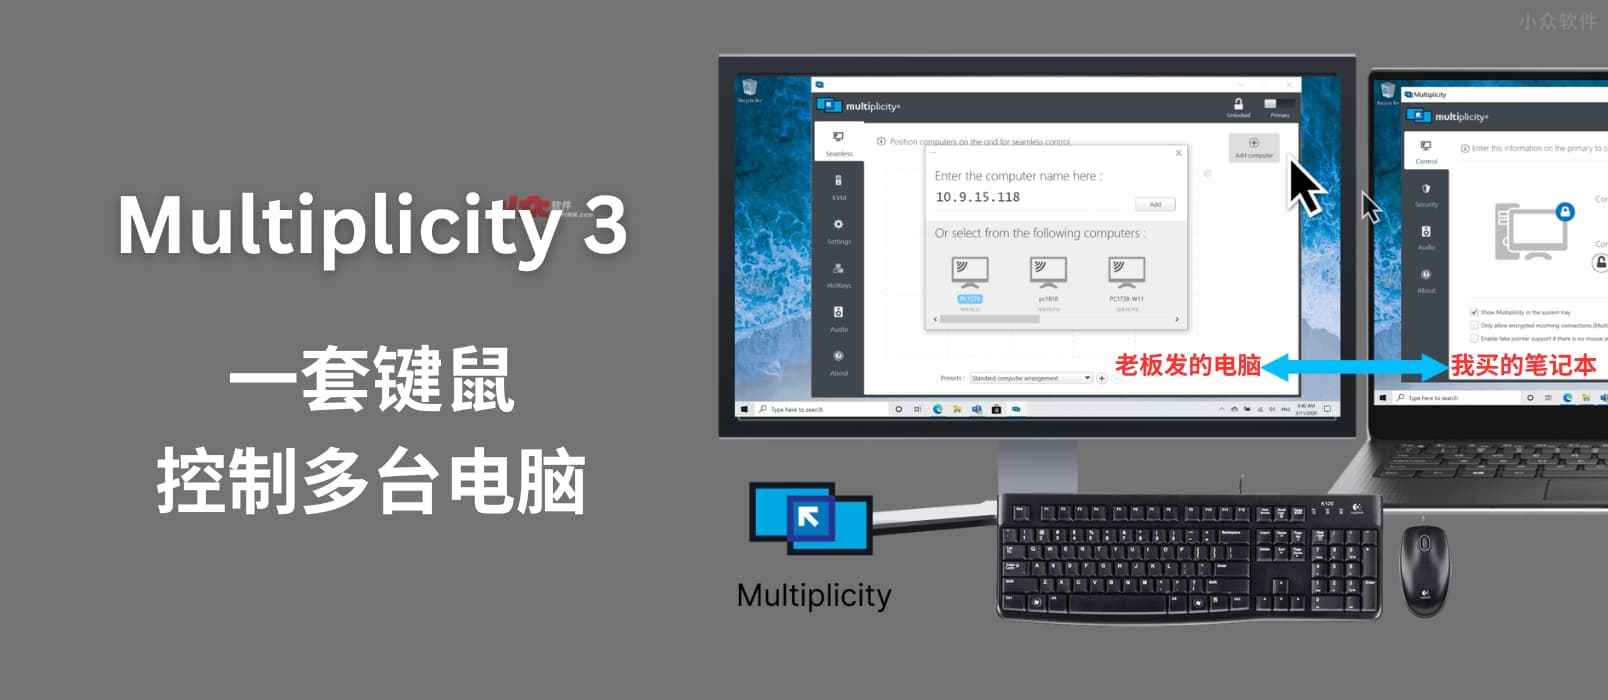 Multiplicity 3 – 通过一套键盘鼠标跨屏幕控制多达 9 台电脑，还能共享音频[Windows]